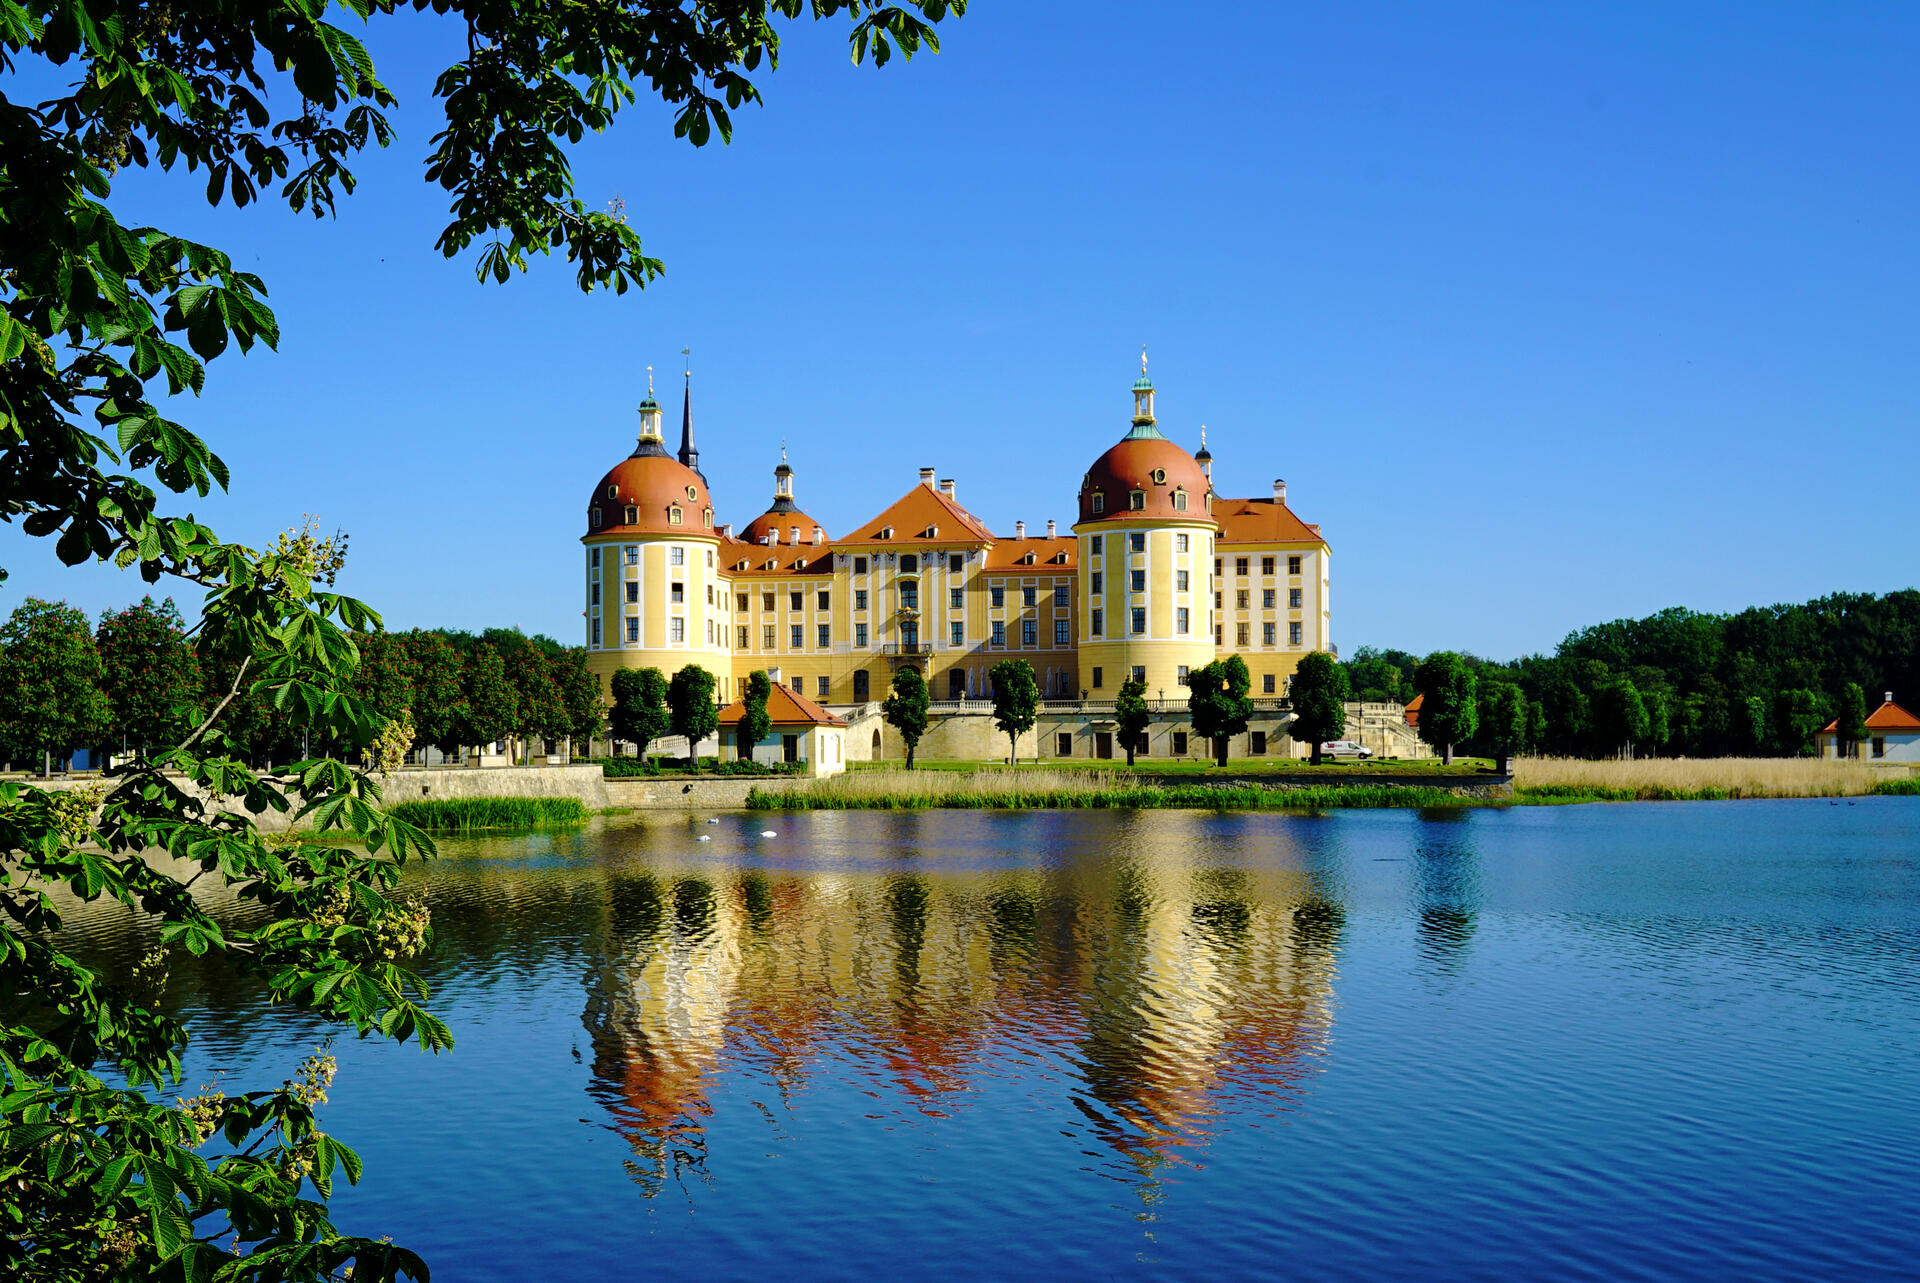 Bild vergrößern: Schloss Moritzburg spiegelt sich im Wasser.